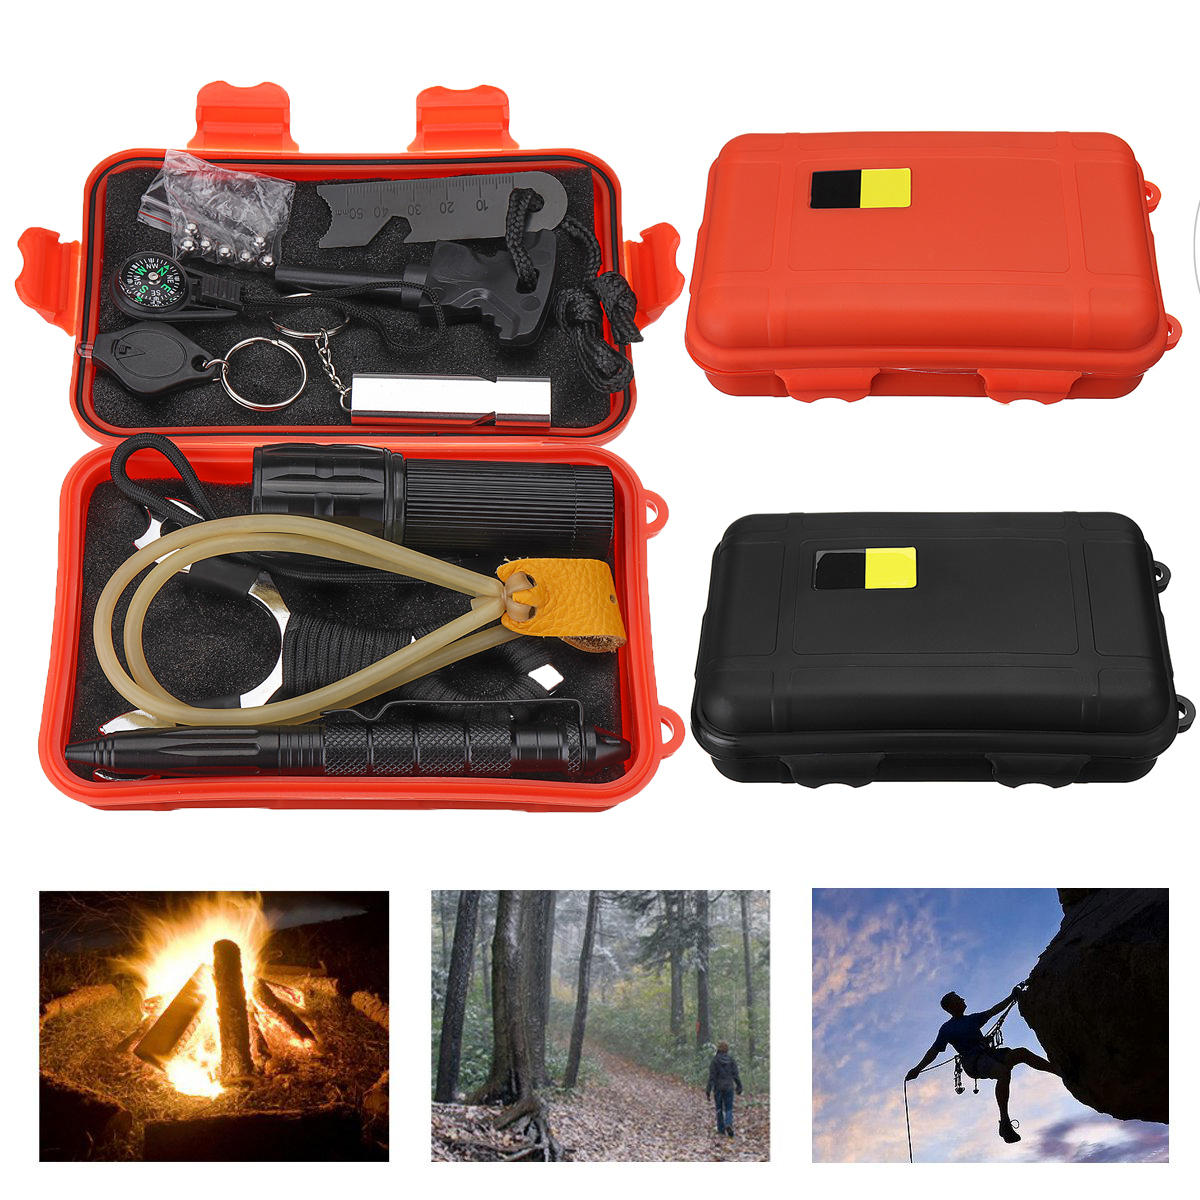 Εξωτερικό 7 σε 1 EDC επιβίωση εργαλεία περίπτωση SOS Emergency Multifunctional Kits Box κατασκήνωση πεζοπορία